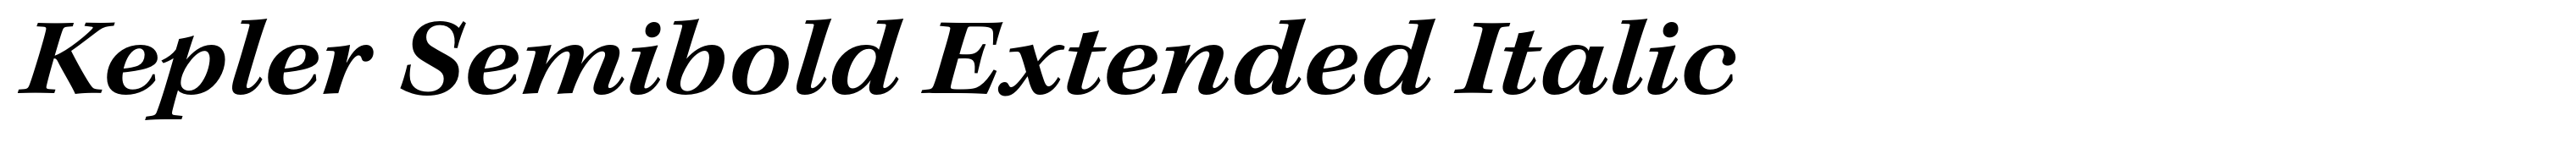 Kepler Semibold Extended Italic